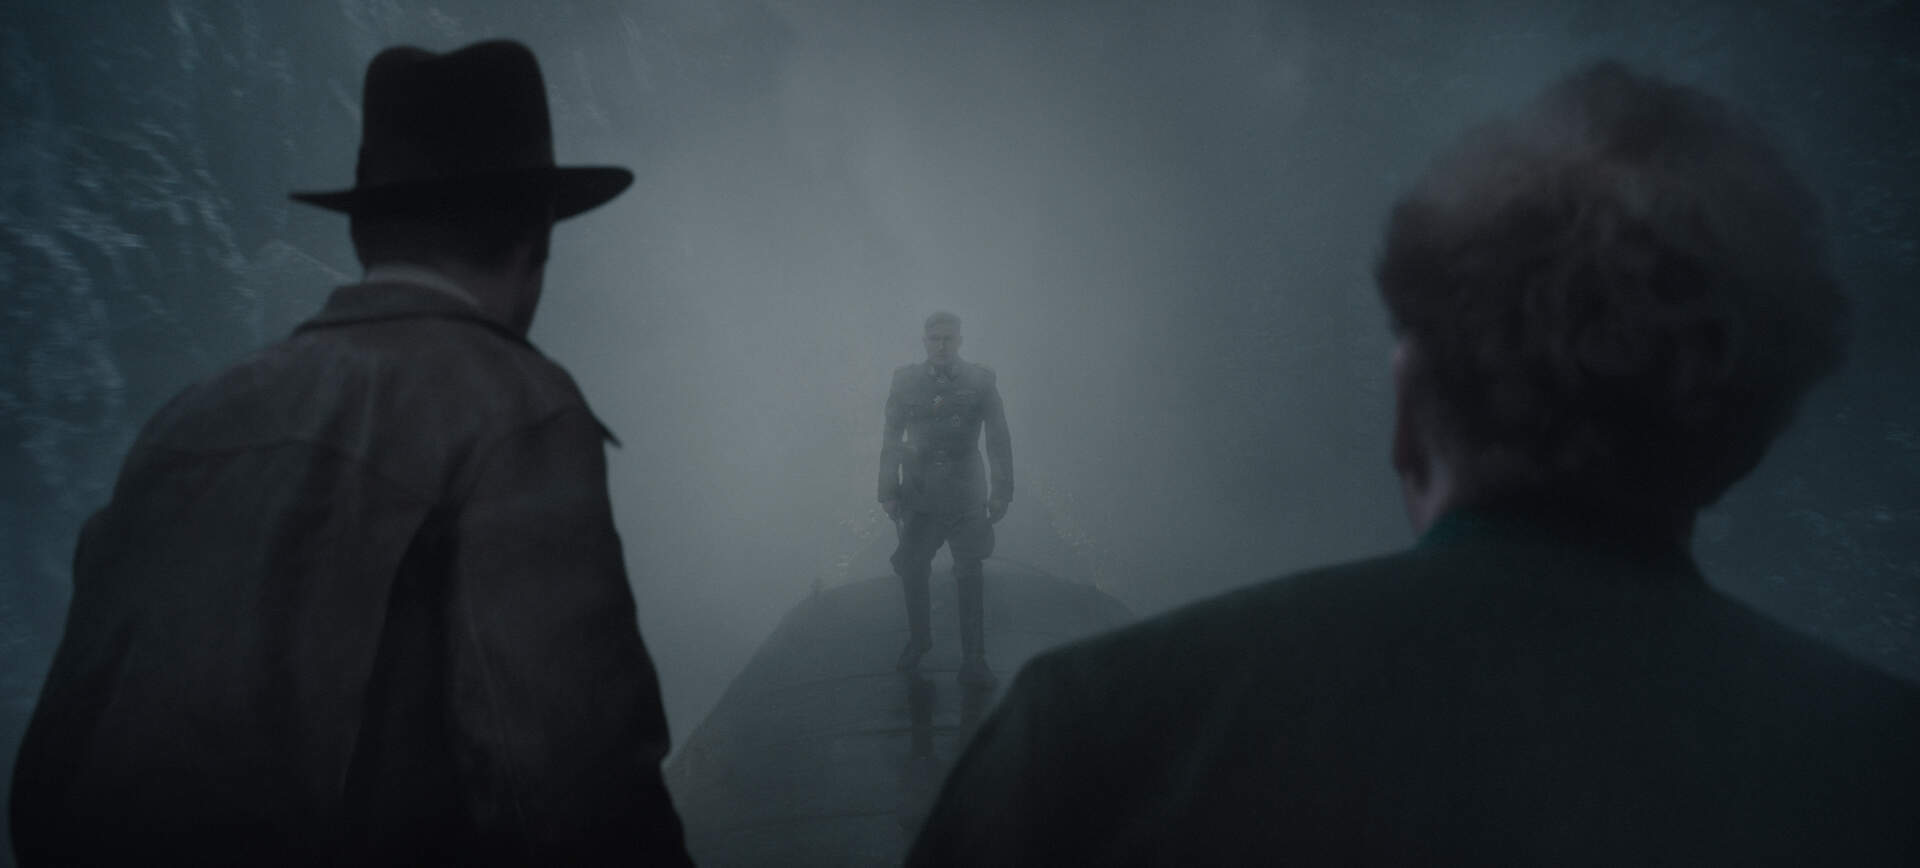 Indiana Jones und das Rad des Schicksals - Szenenbild 24 von 28